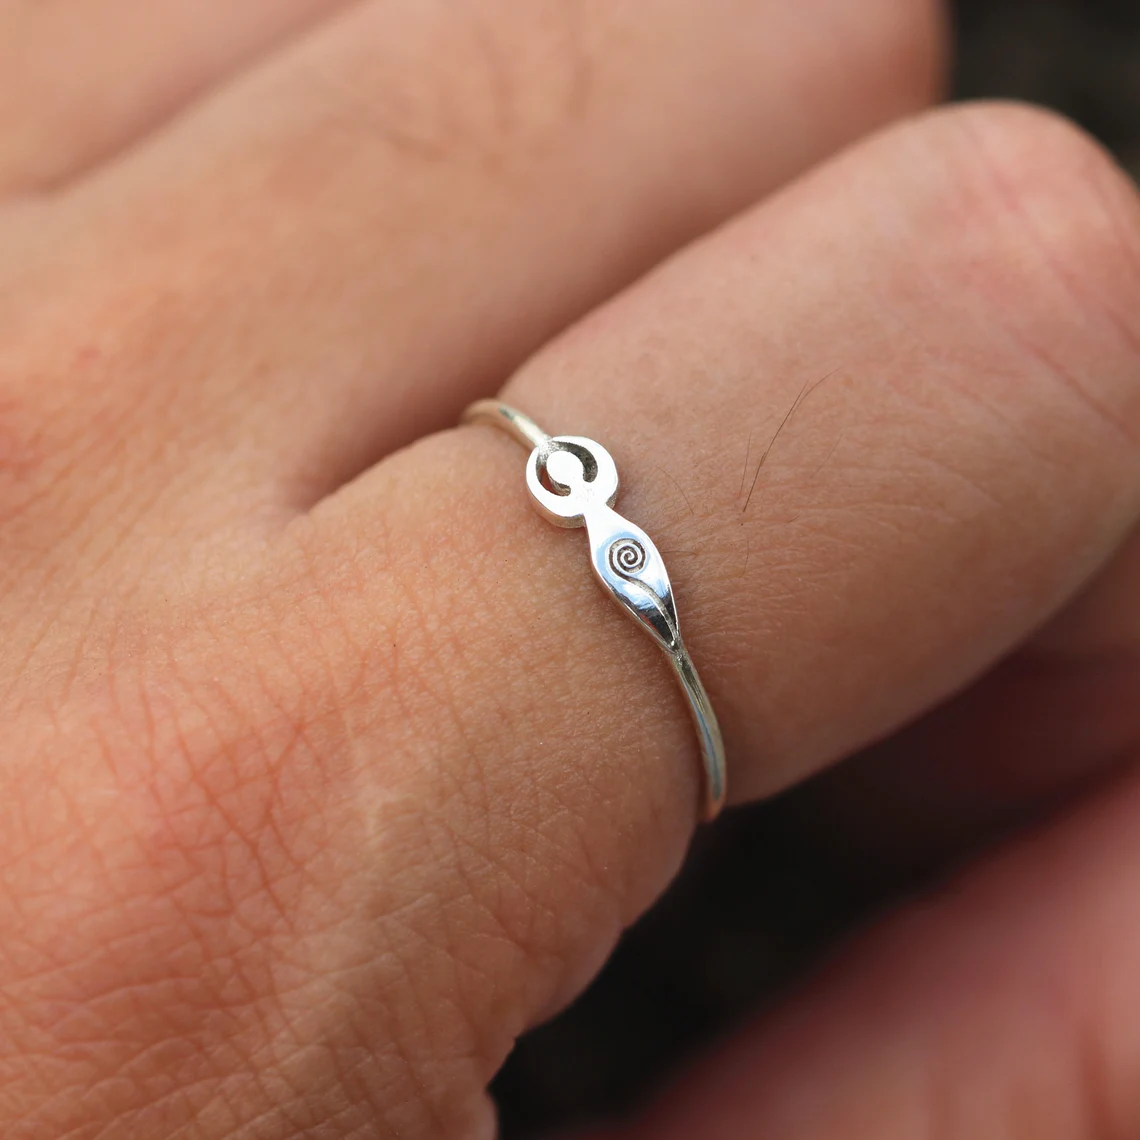 silver spiral goddess ring on the finger